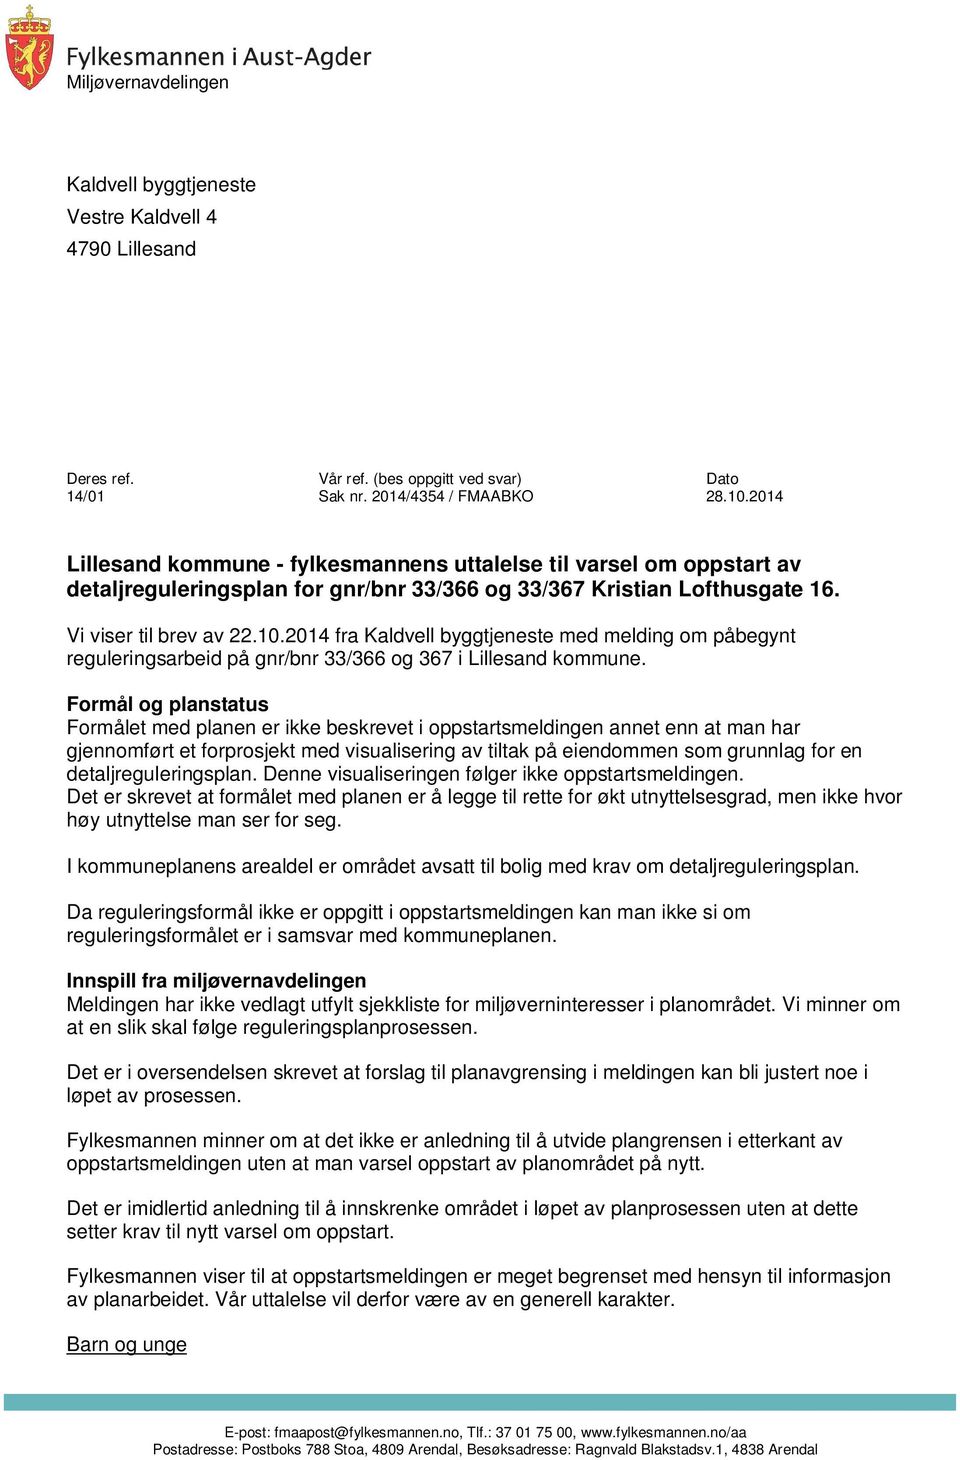 2014 fra Kaldvell byggtjeneste med melding om påbegynt reguleringsarbeid på gnr/bnr 33/366 og 367 i Lillesand kommune.